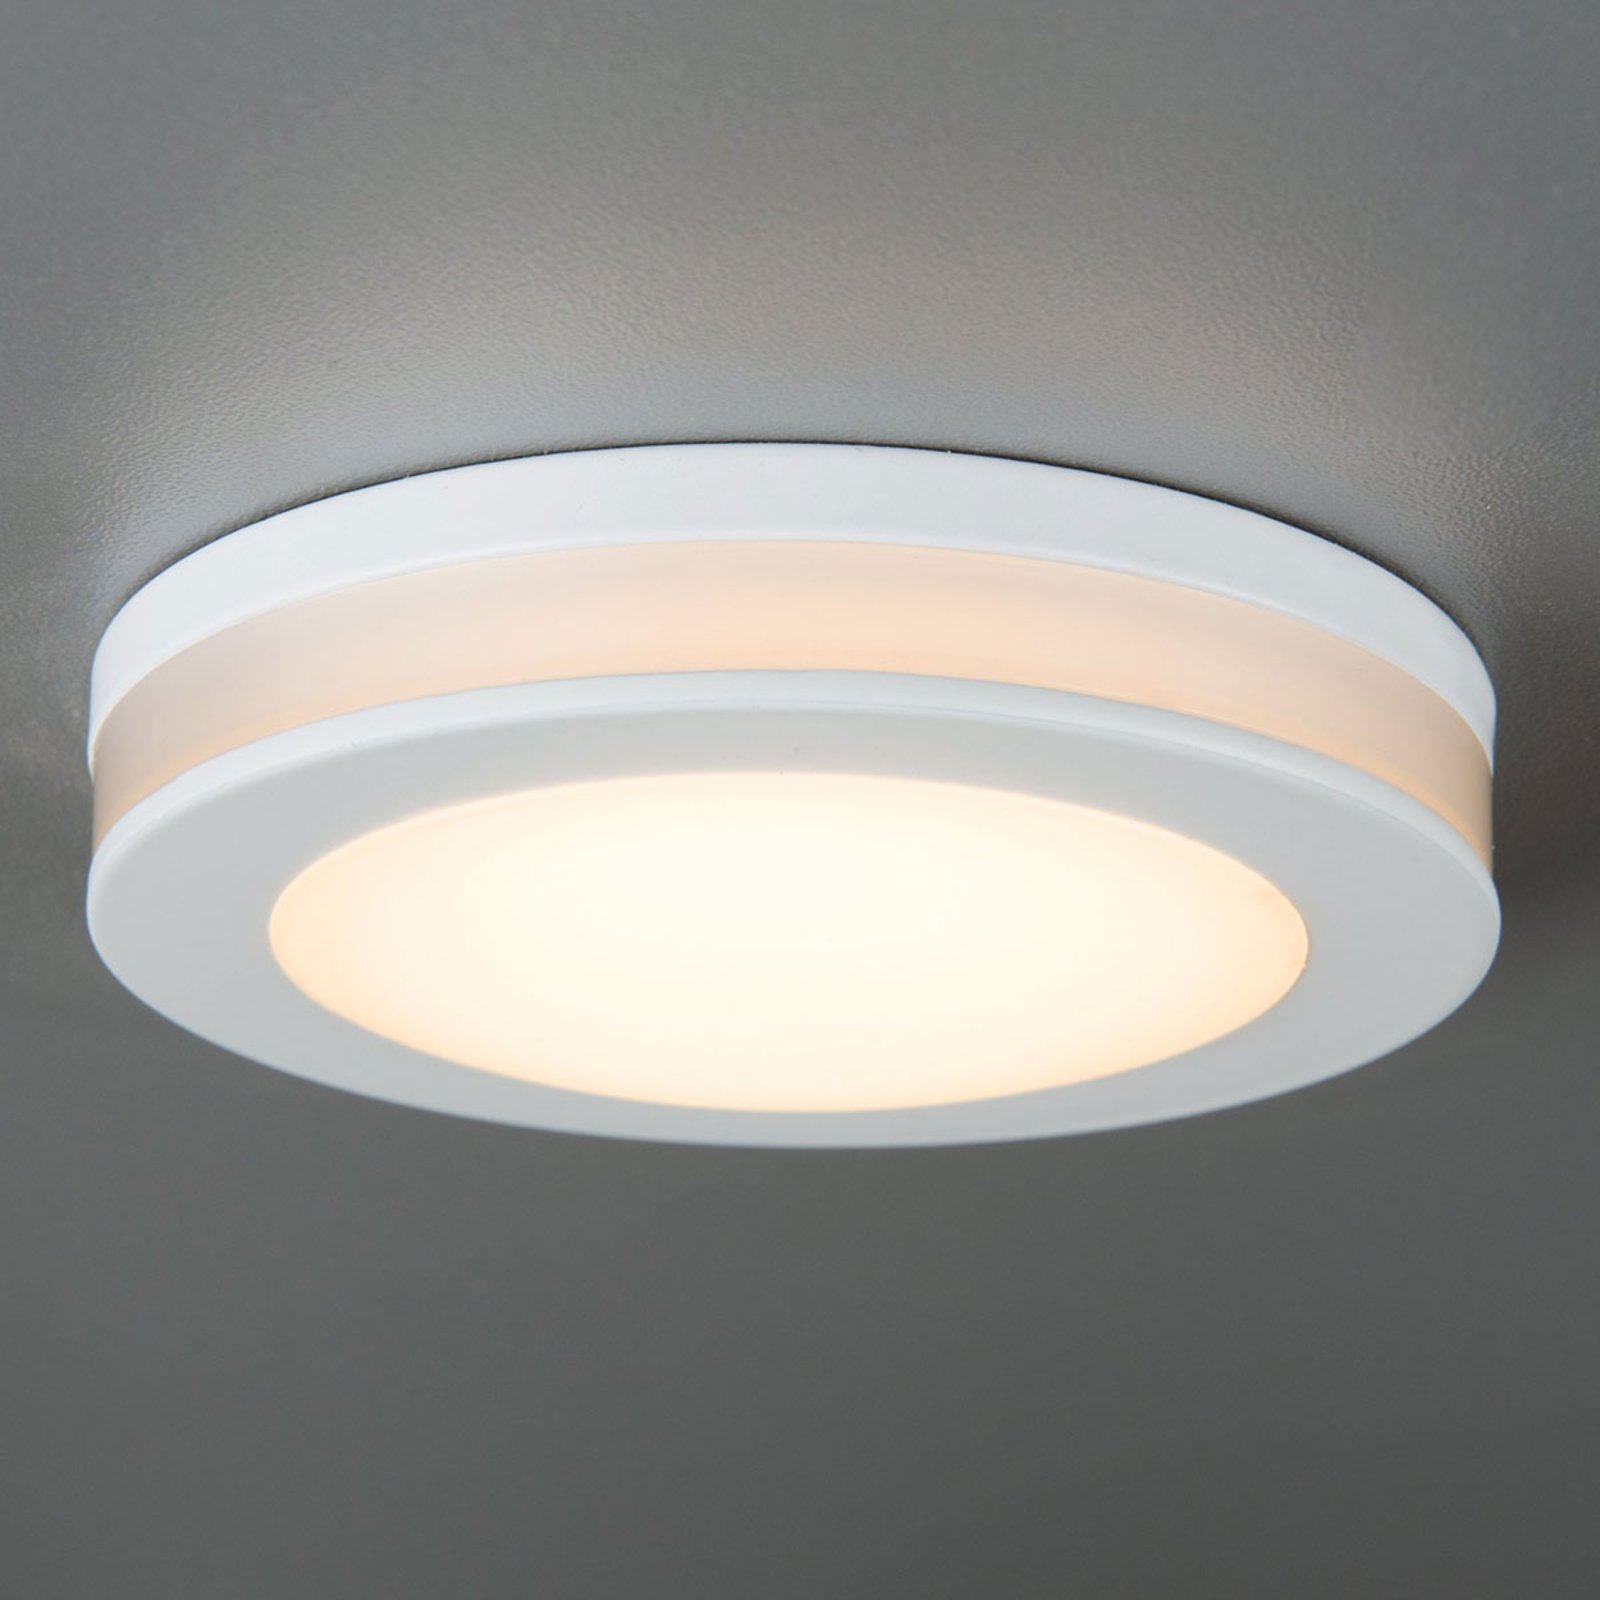 Artemis LED-indbygningsspot, 10 W, hvid